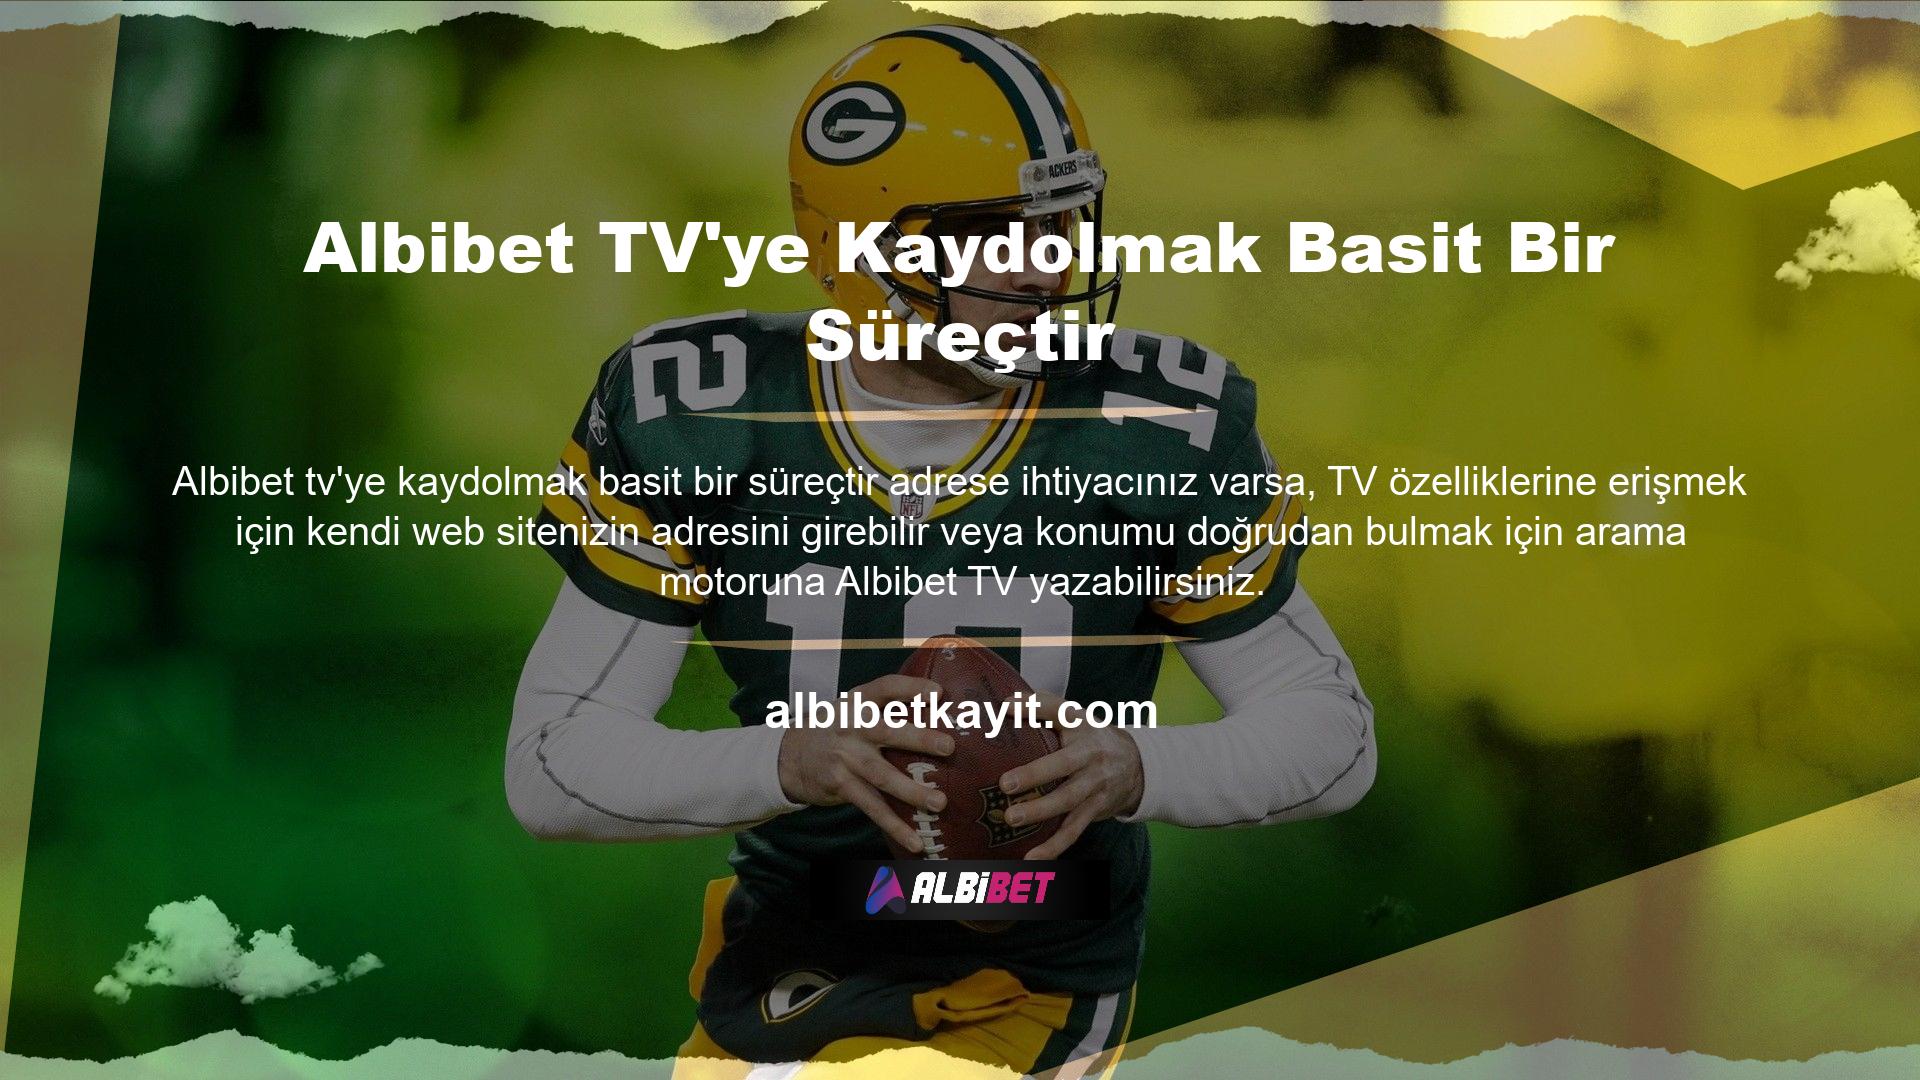 Albibet TV tüm spor dallarının canlı yayınını sunuyor